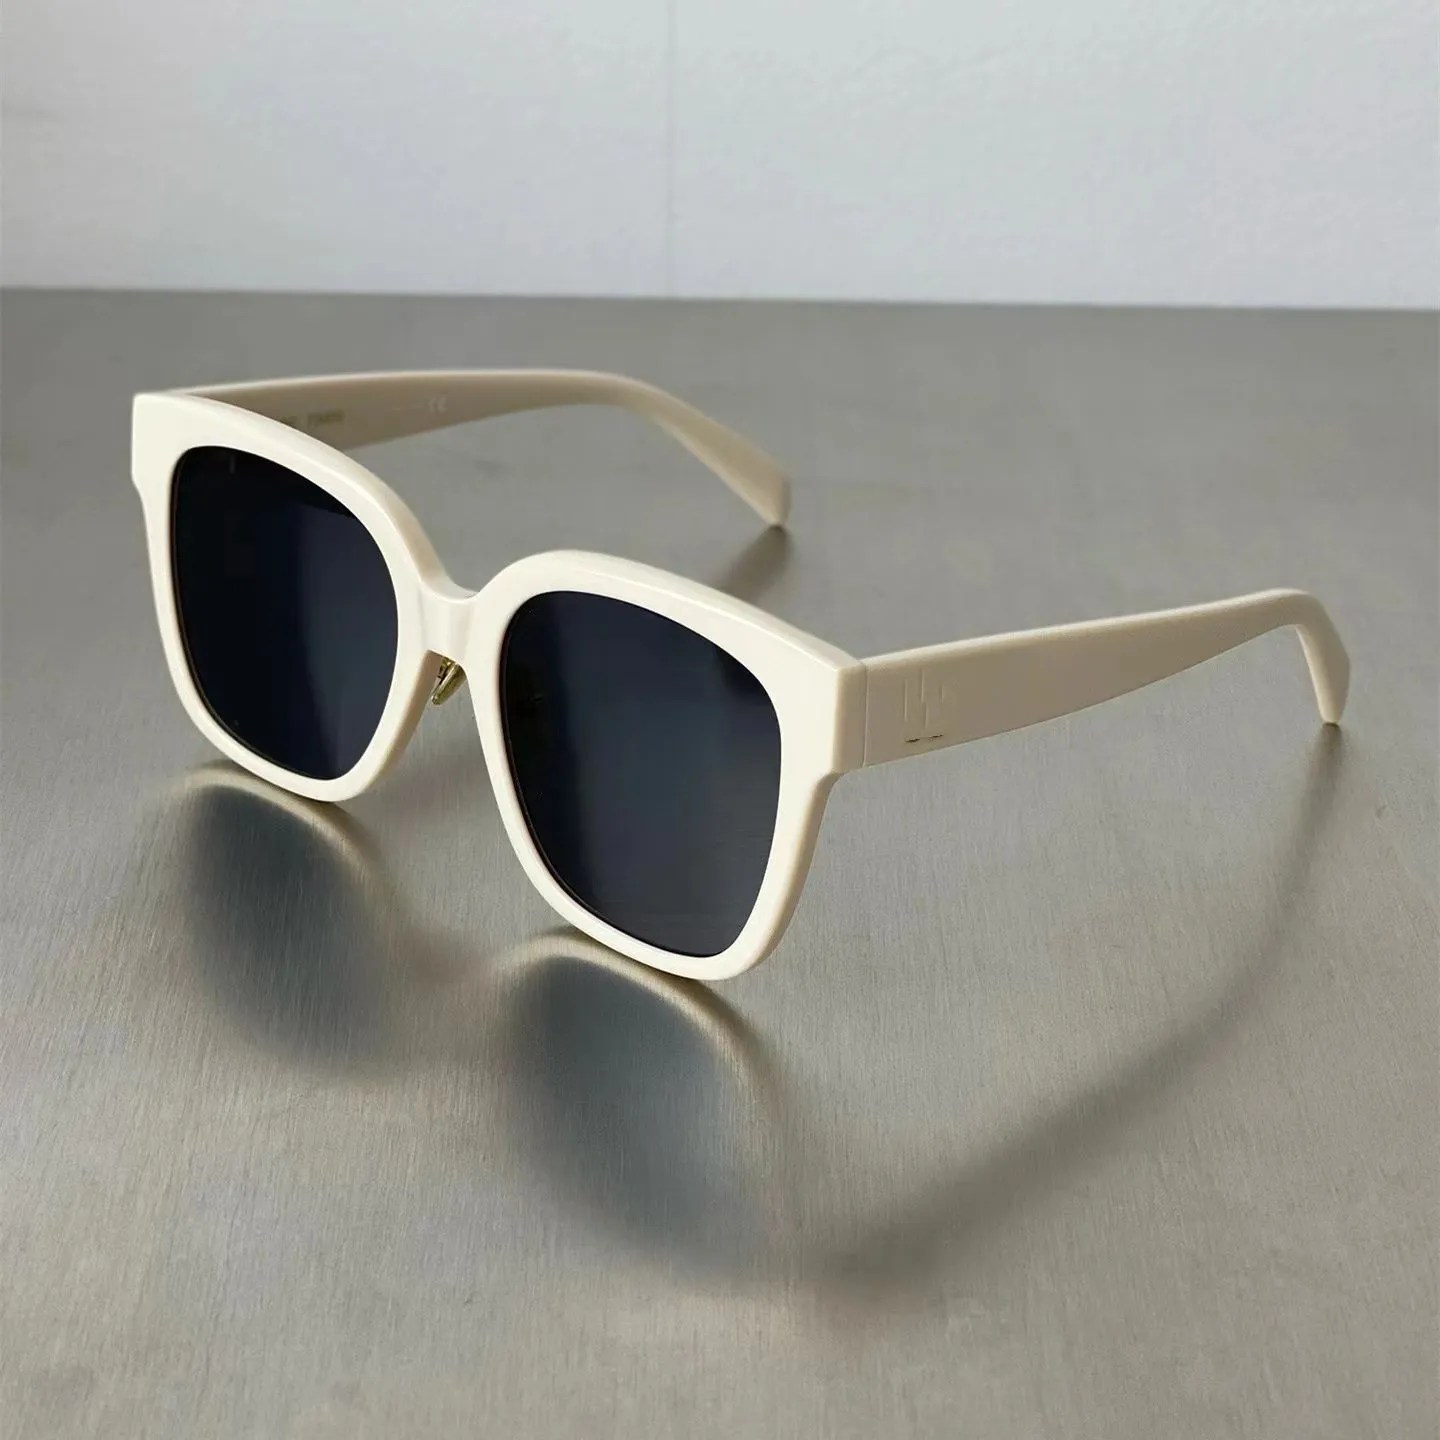 Высококачественные солнцезащитные очки-коробочки, устойчивые к ультрафиолетовому излучению и модные солнцезащитные очки, классические солнцезащитные очки, модные солнцезащитные очки для похудения в квадратной оправе